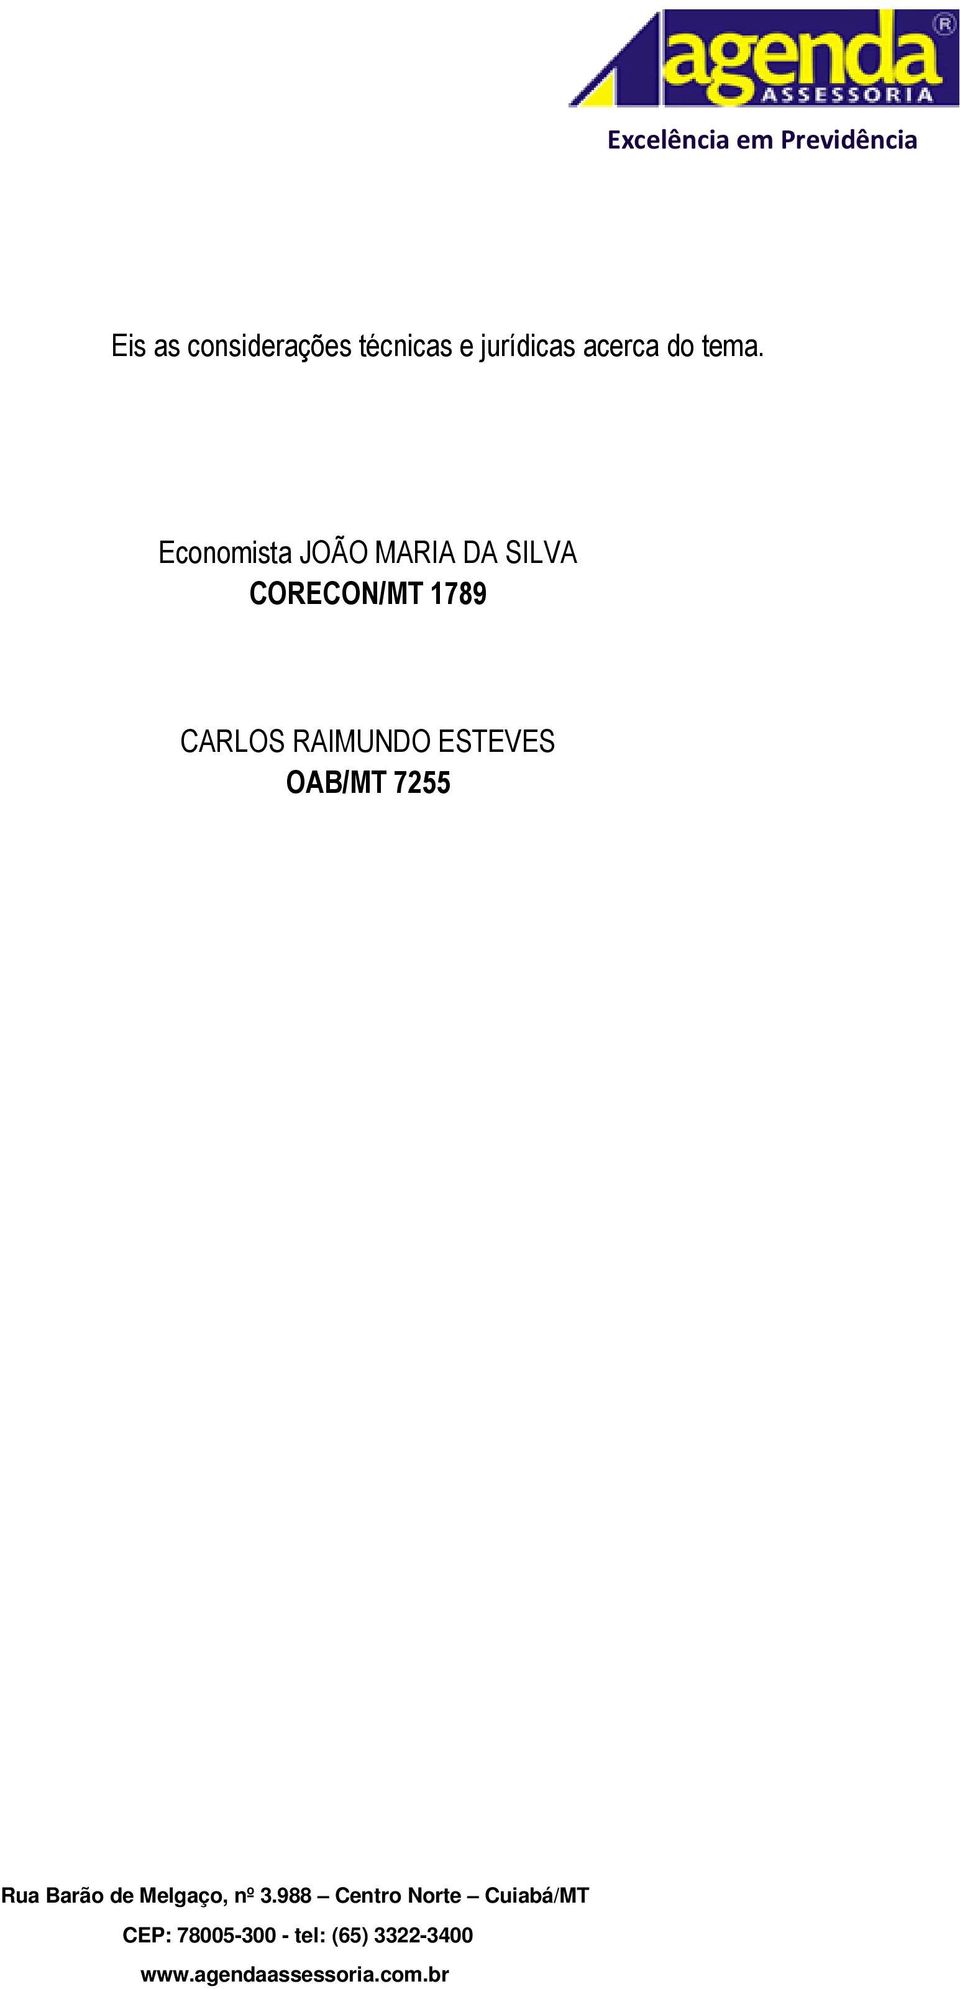 Economista JOÃO MARIA DA SILVA